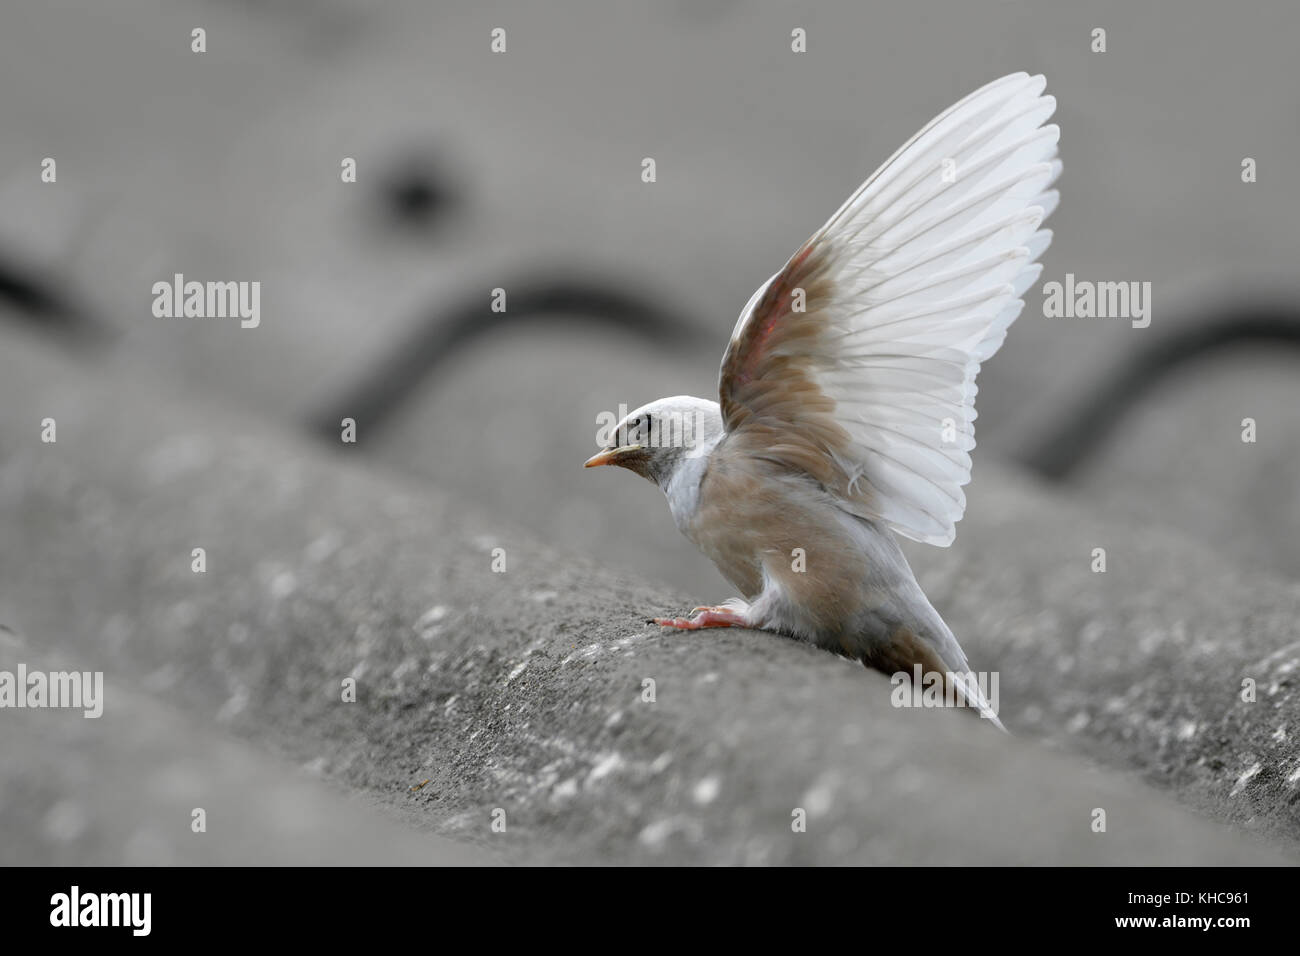 Fienile Swallow ( Hirundo rustica ), fledged, raro difetto genico, piumaggio bianco, leucismo, leuco, arroccato su un tetto, ali tendente, Europa. Foto Stock